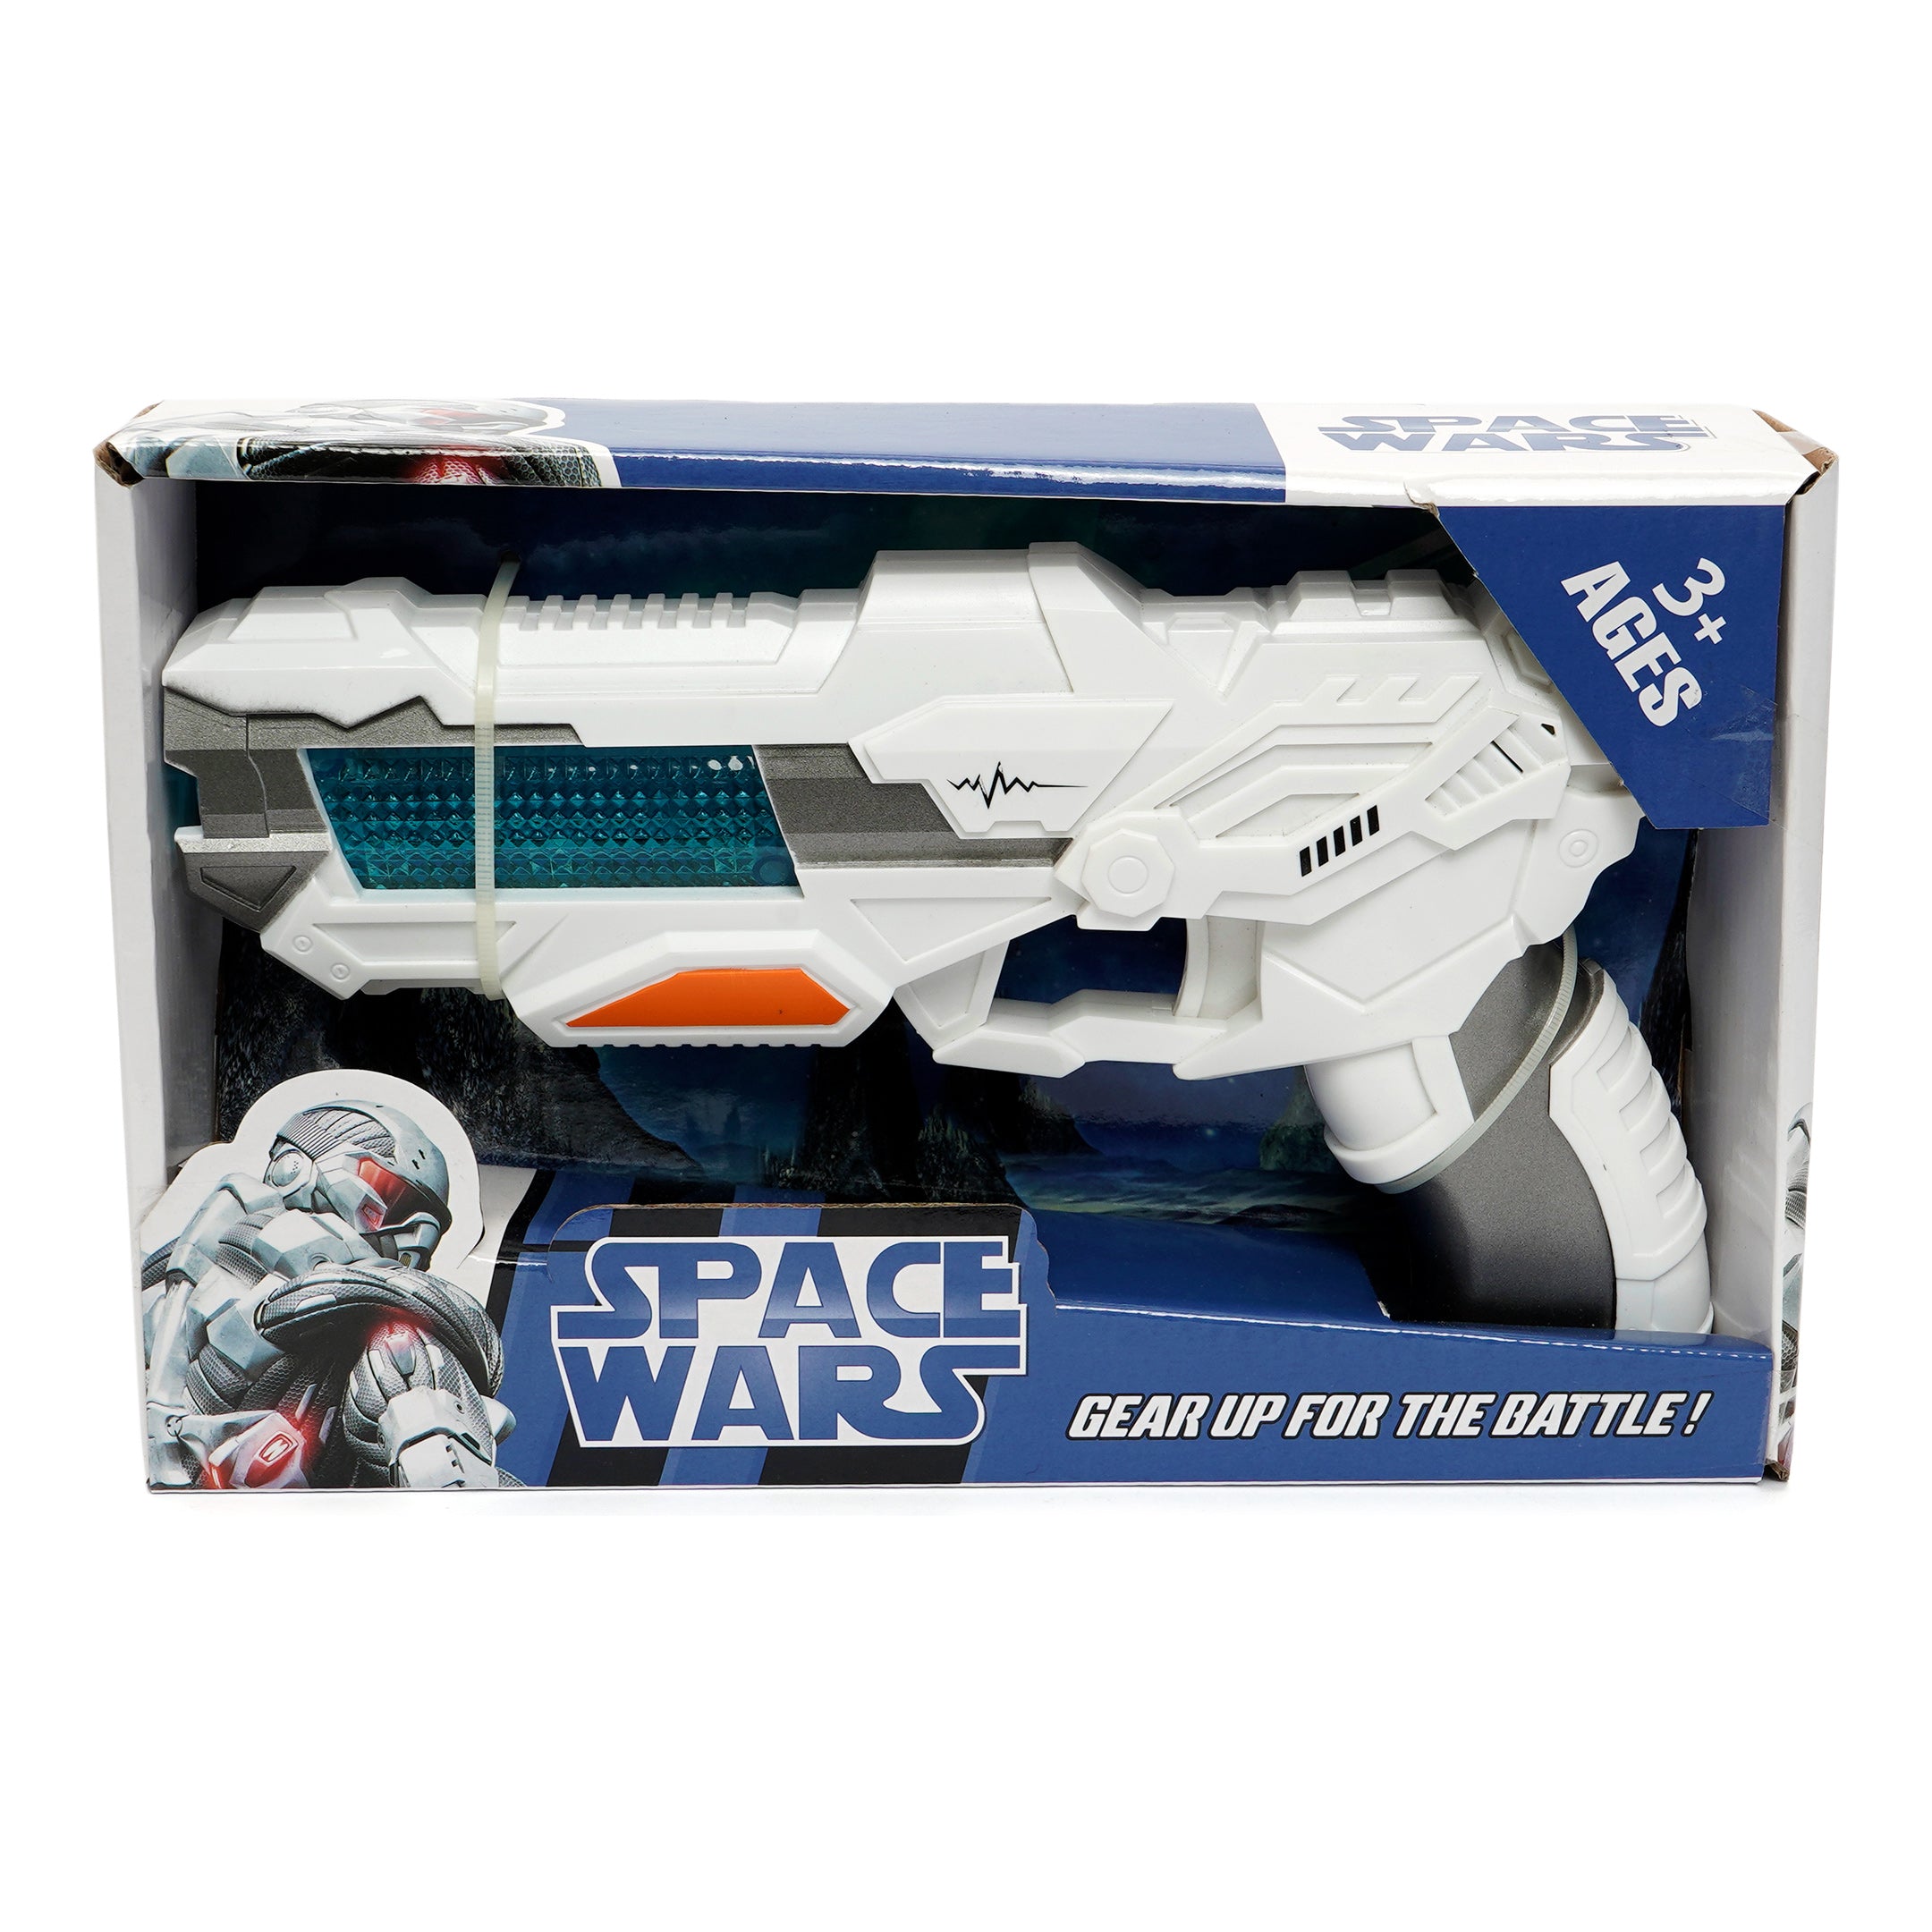 Space Weapon Toy Gun